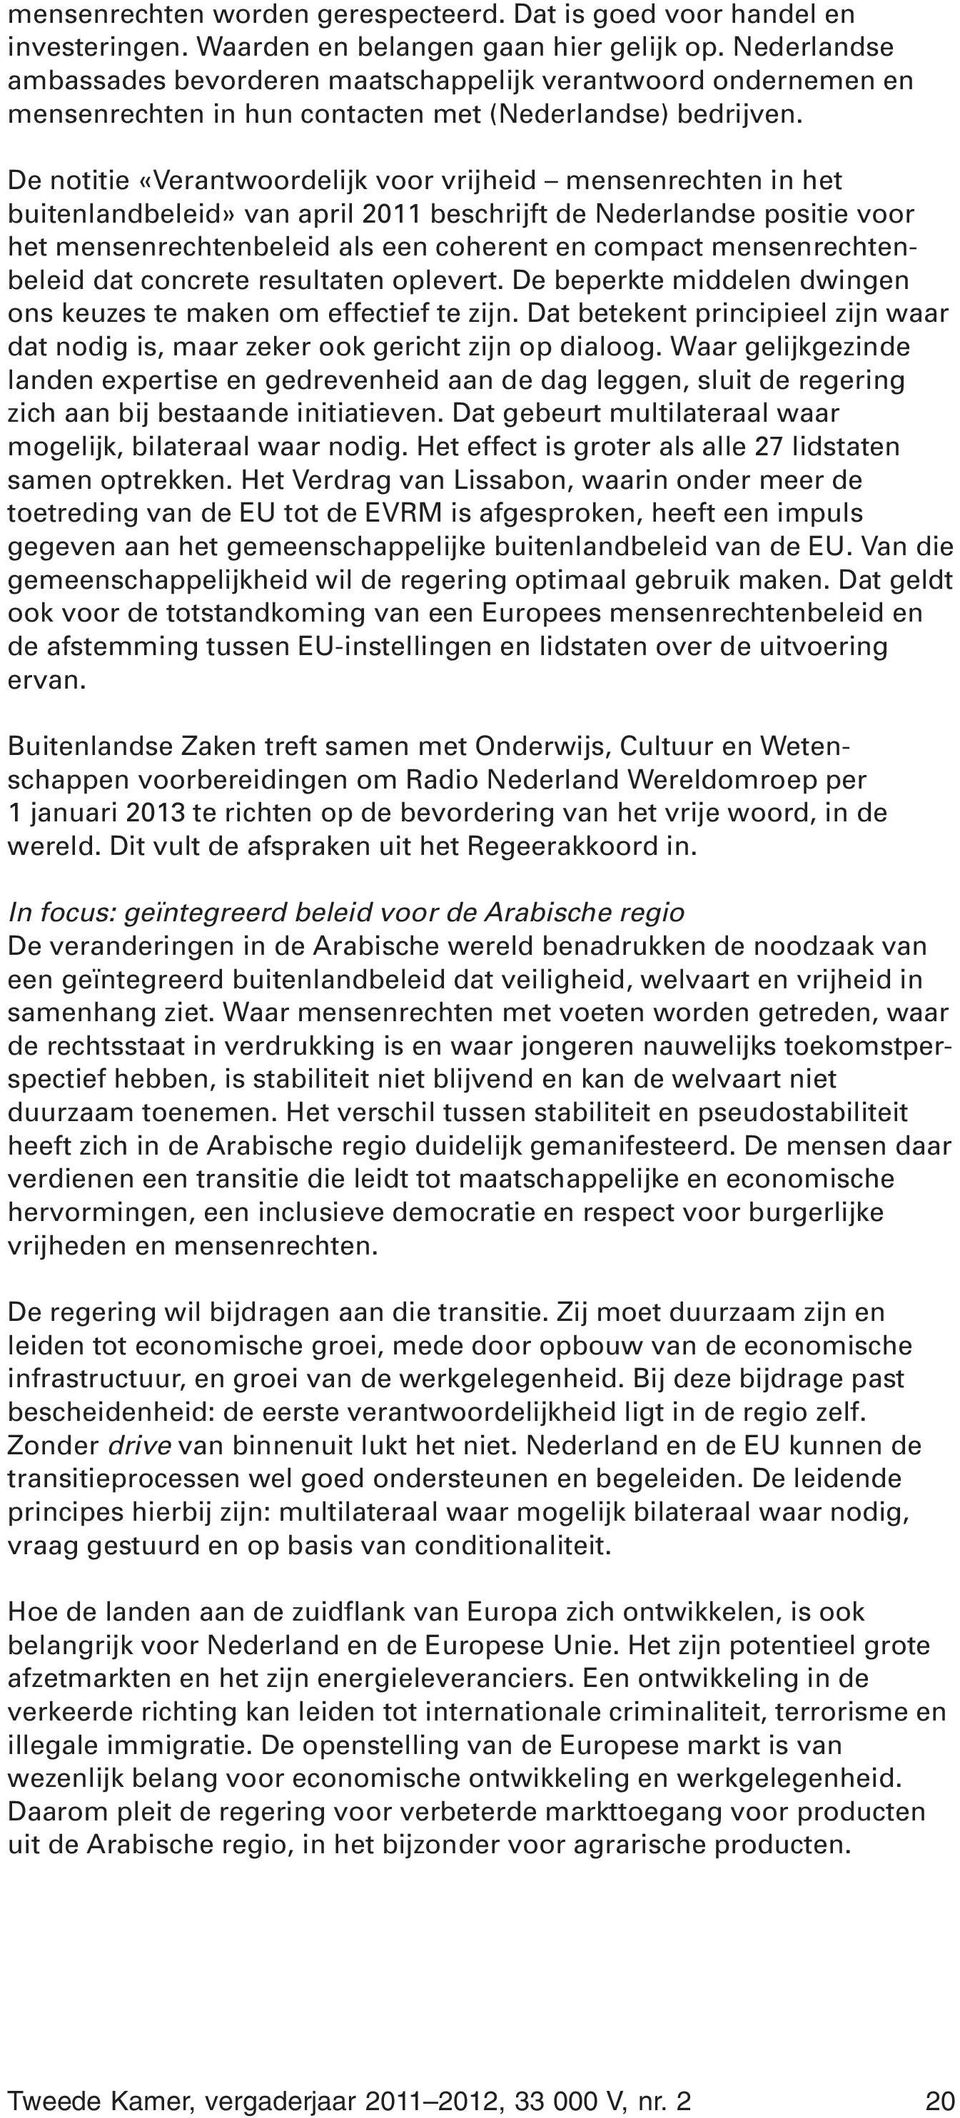 De notitie «Verantwoordelijk voor vrijheid mensenrechten in het buitenlandbeleid» van april 2011 beschrijft de Nederlandse positie voor het mensenrechtenbeleid als een coherent en compact